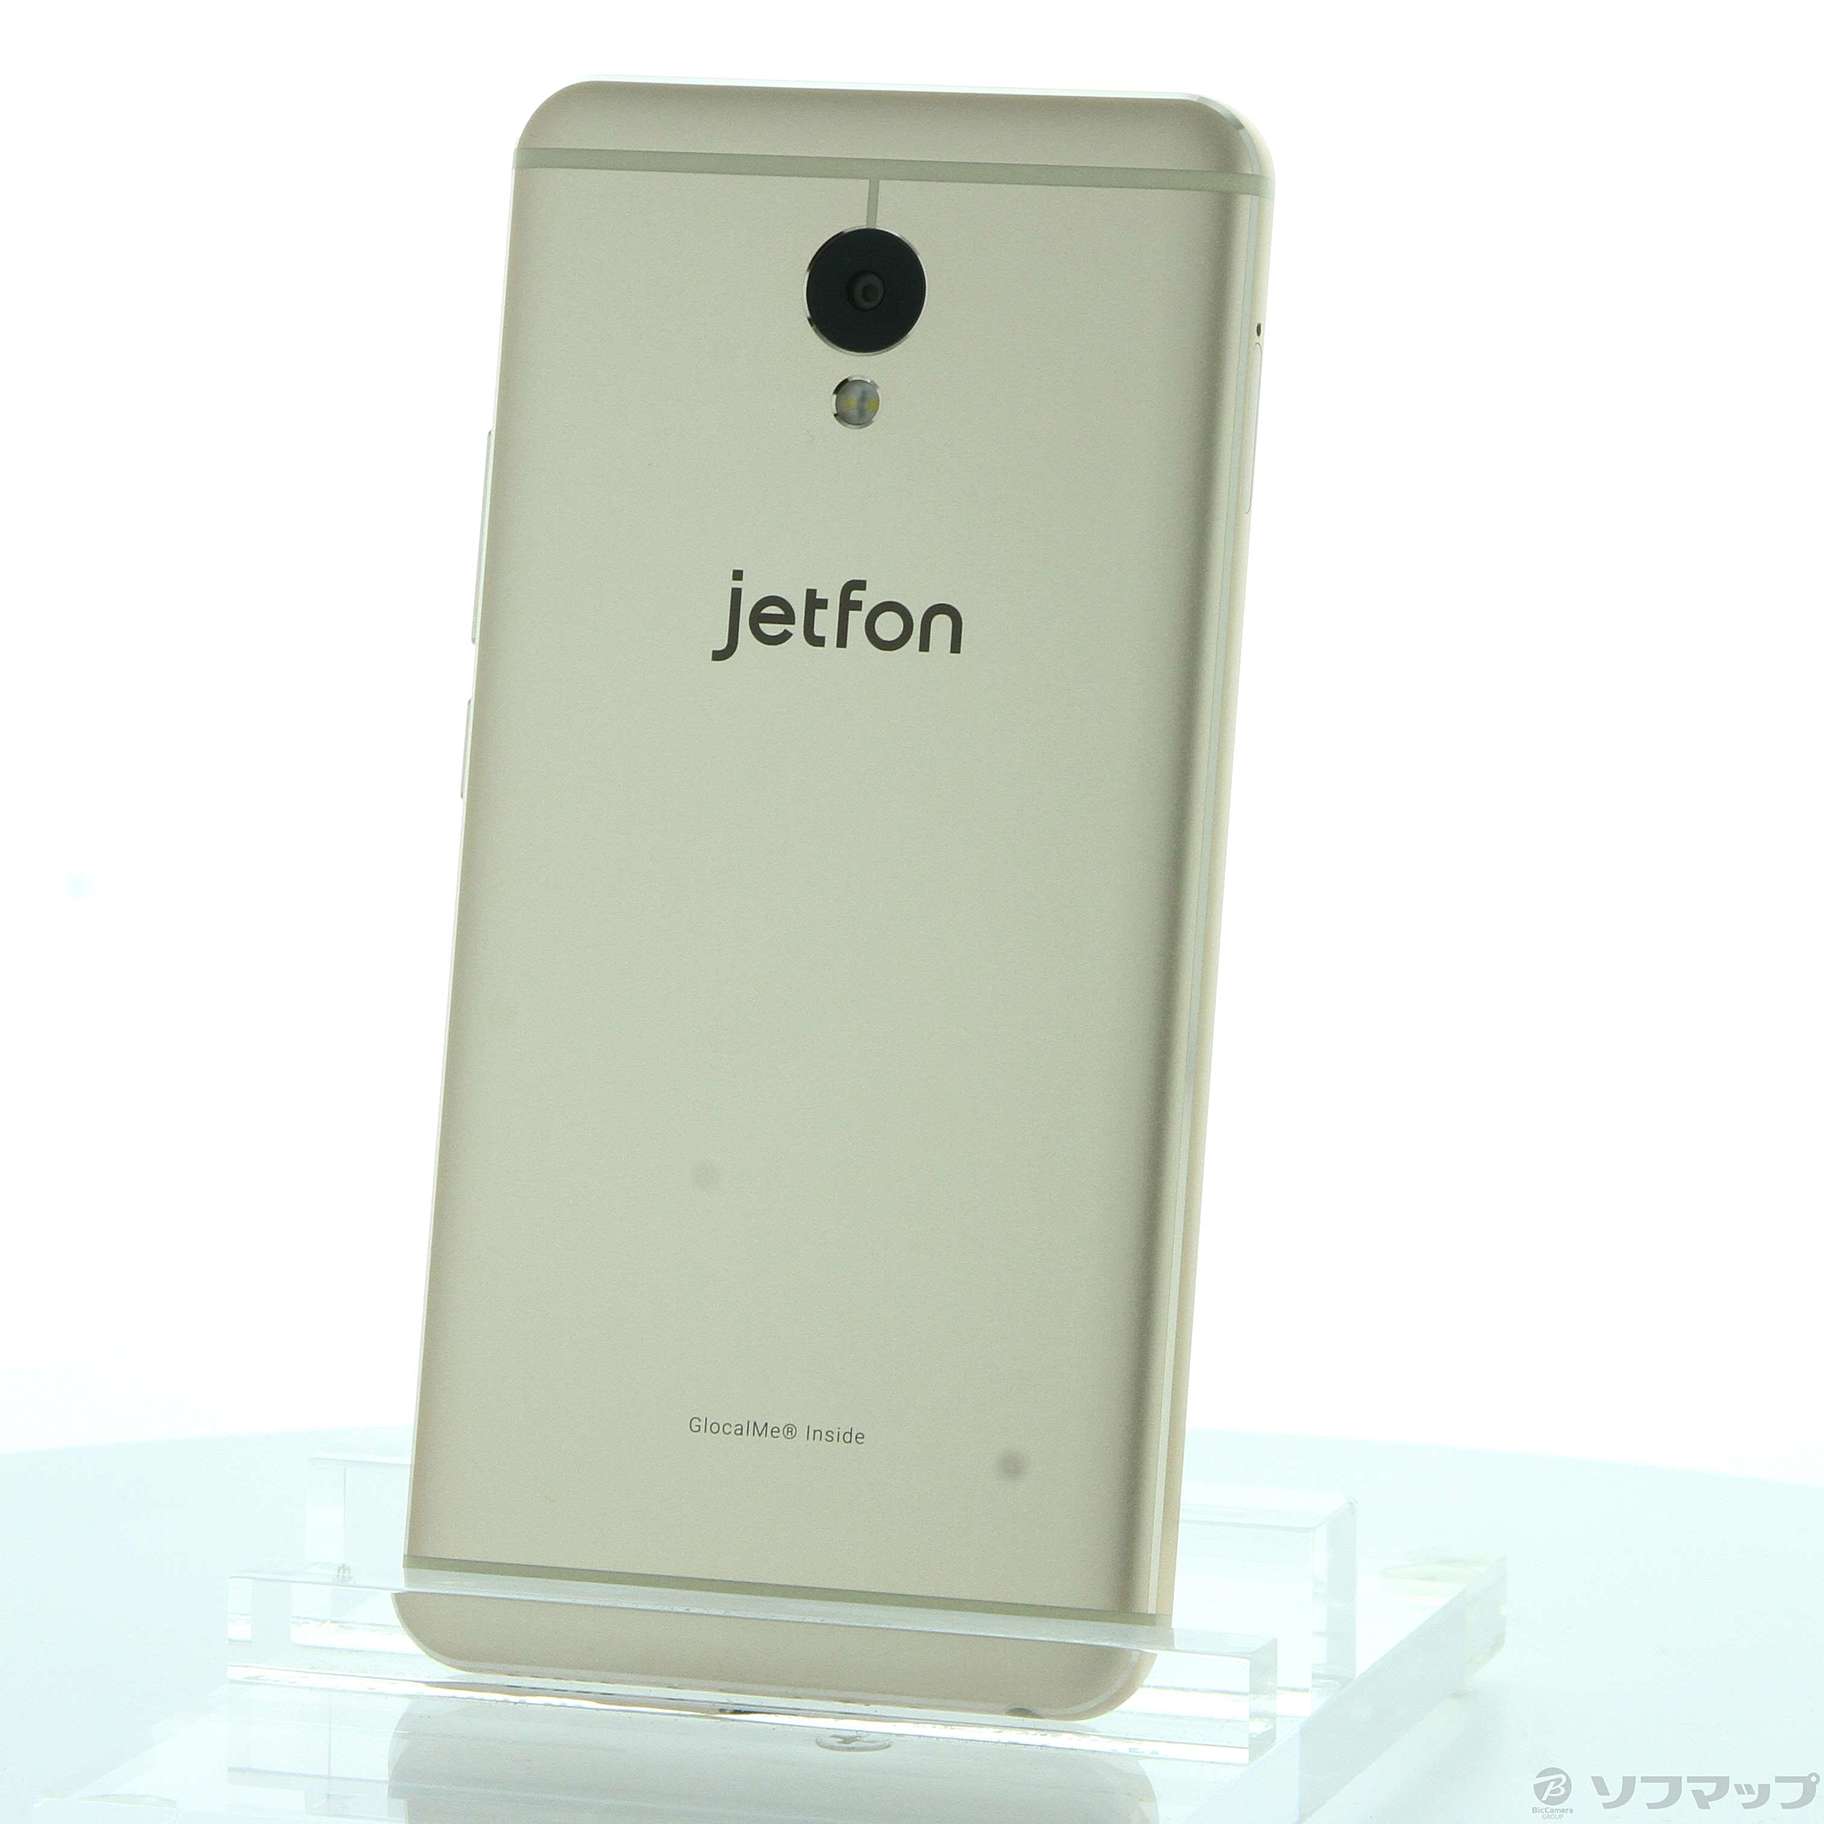 (中古)MAYA SYSTEM jetfon 64GB シャンパンゴールド G1701 SIMフリー(349-ud)